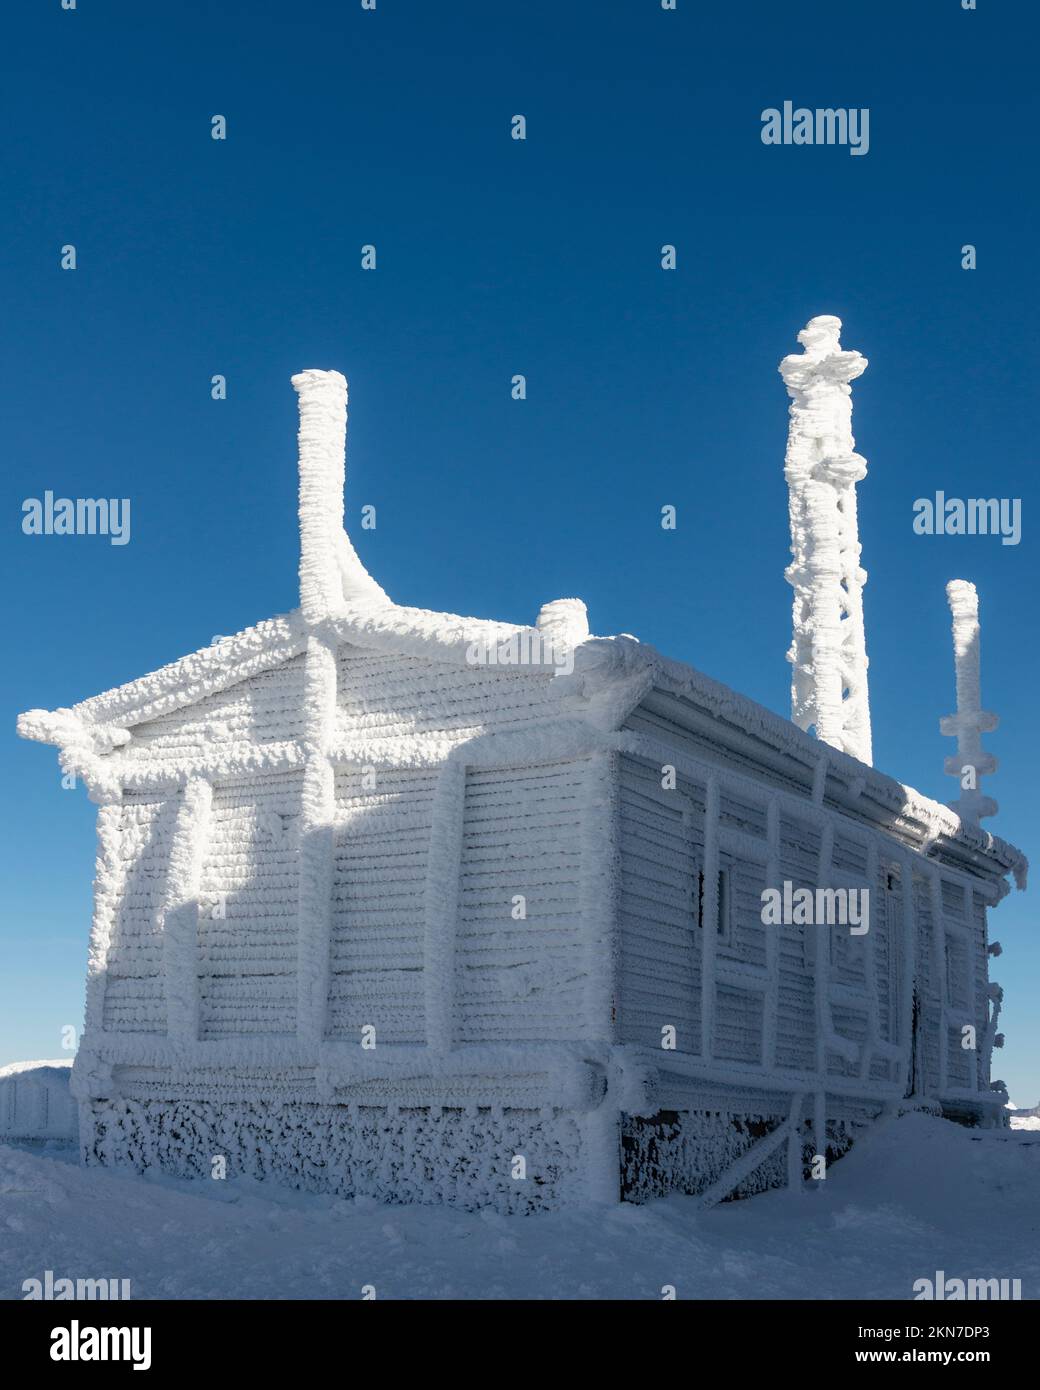 Capanna ricoperta di ghiaccio e neve al Black Peak a 2290 m contro il cielo azzurro, monte Vitosha vicino a Sofia, Bulgaria, Europa orientale, Balcani, UE Foto Stock